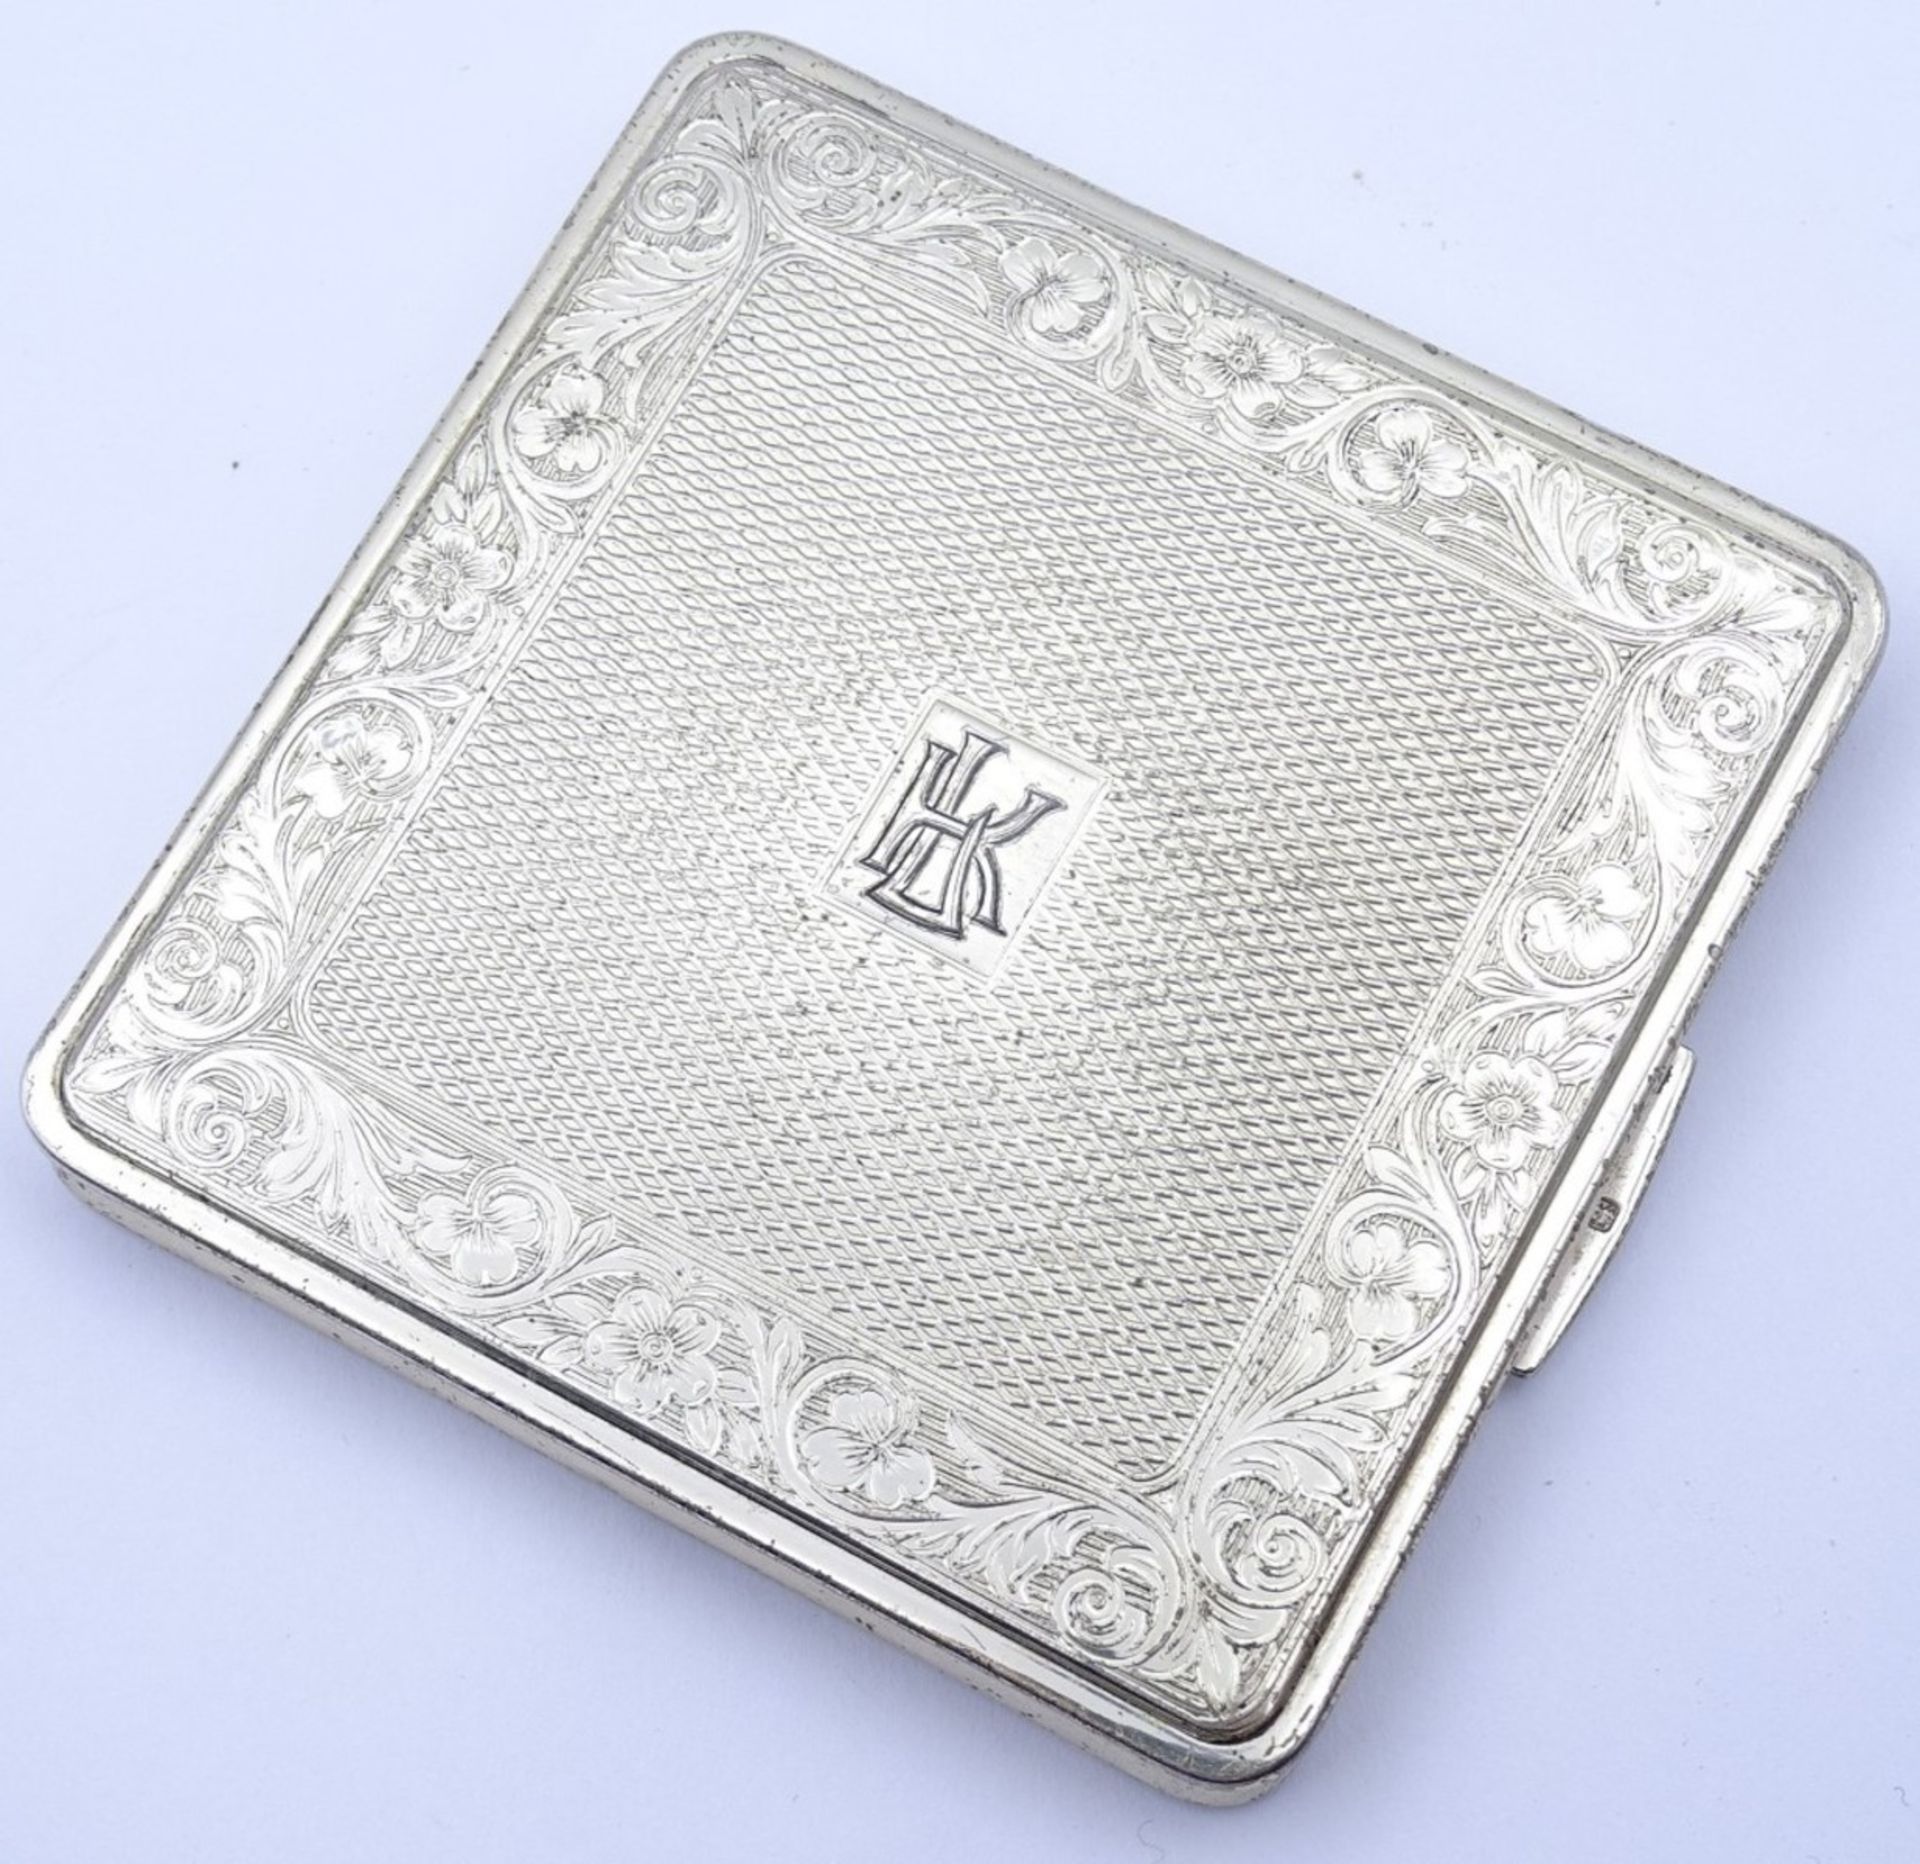 Puderdose,Silber,England,mit Initialen, 7,0x7,0, 115gr. - Bild 7 aus 8